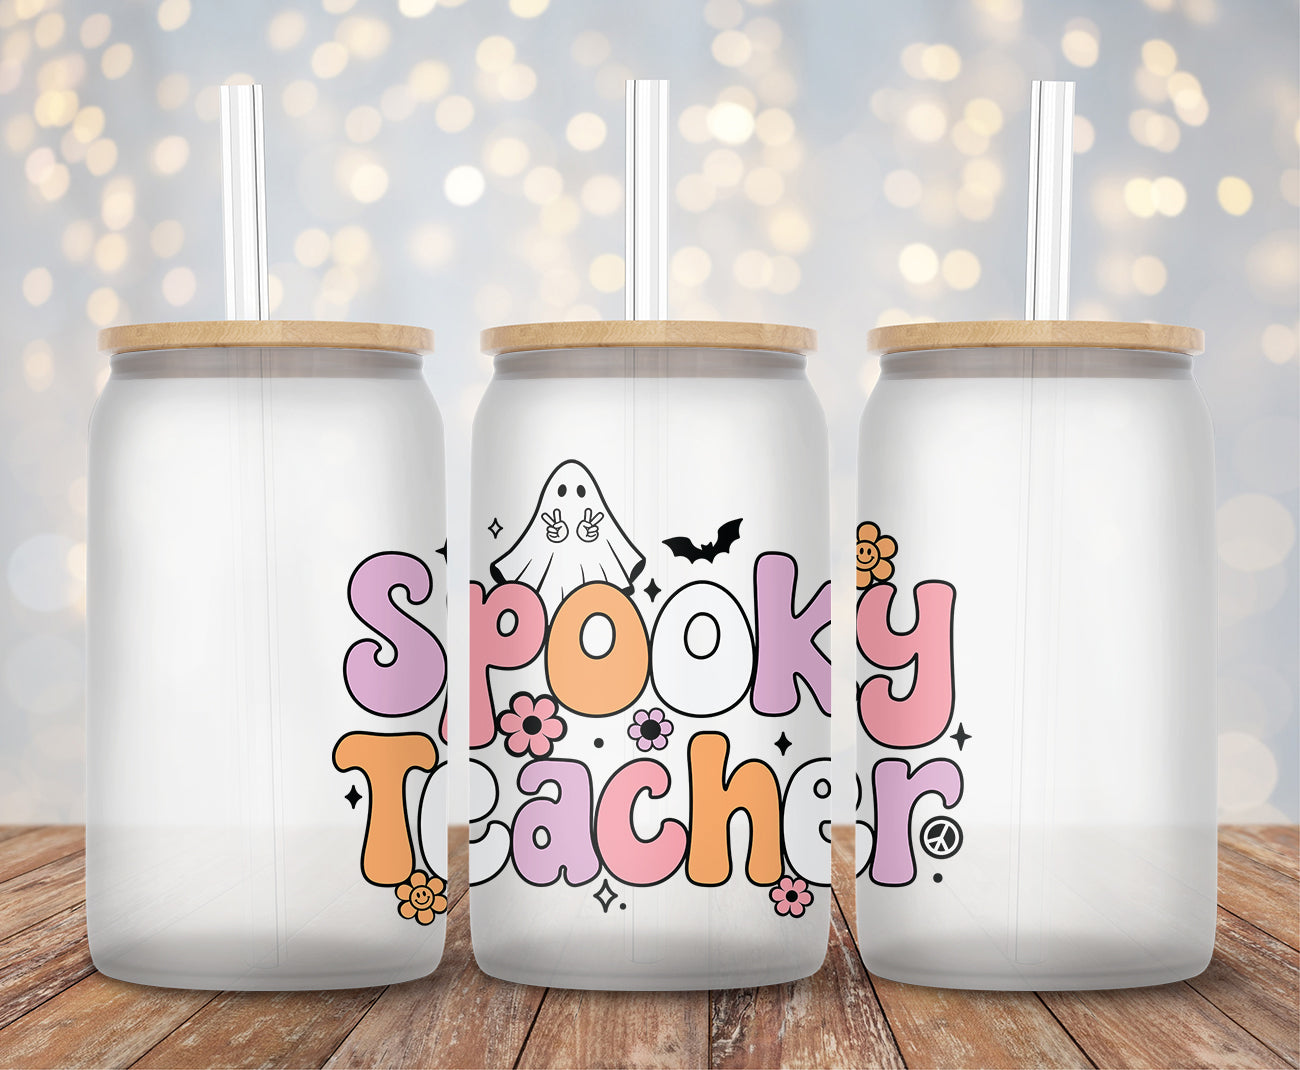 Spooky Teacher - Decal